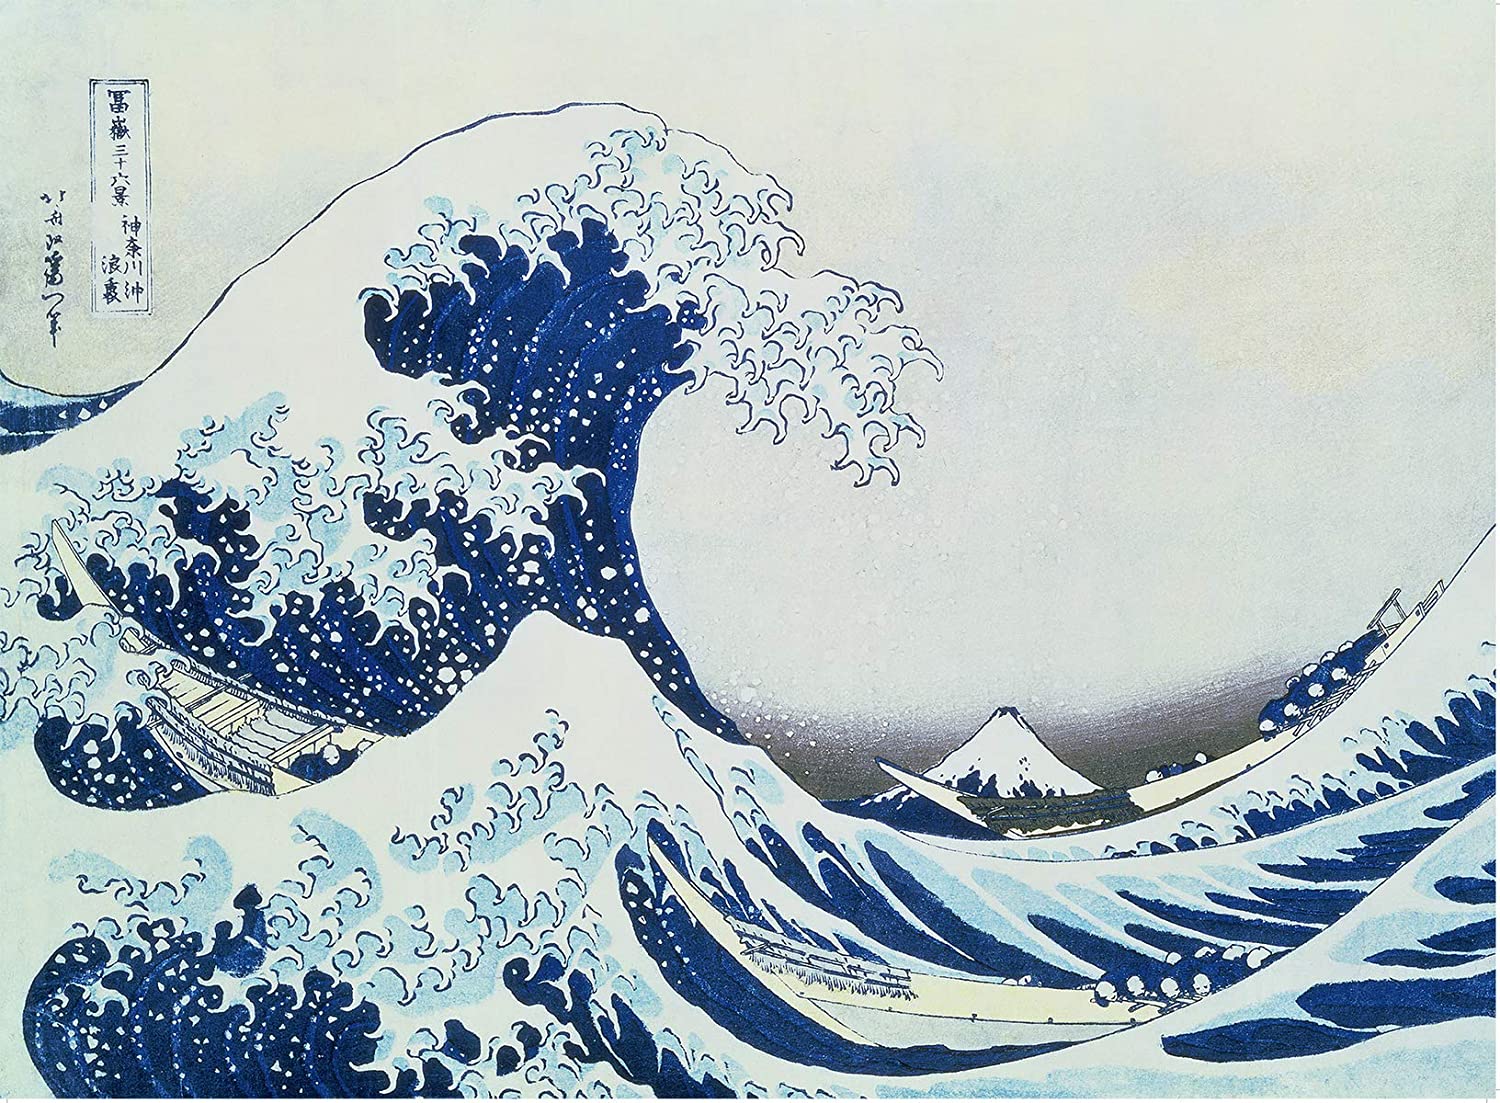 Ravensburger - Hokusai Great Wave off Kanagawa 300 Pieces - Jigsaw Puzzle